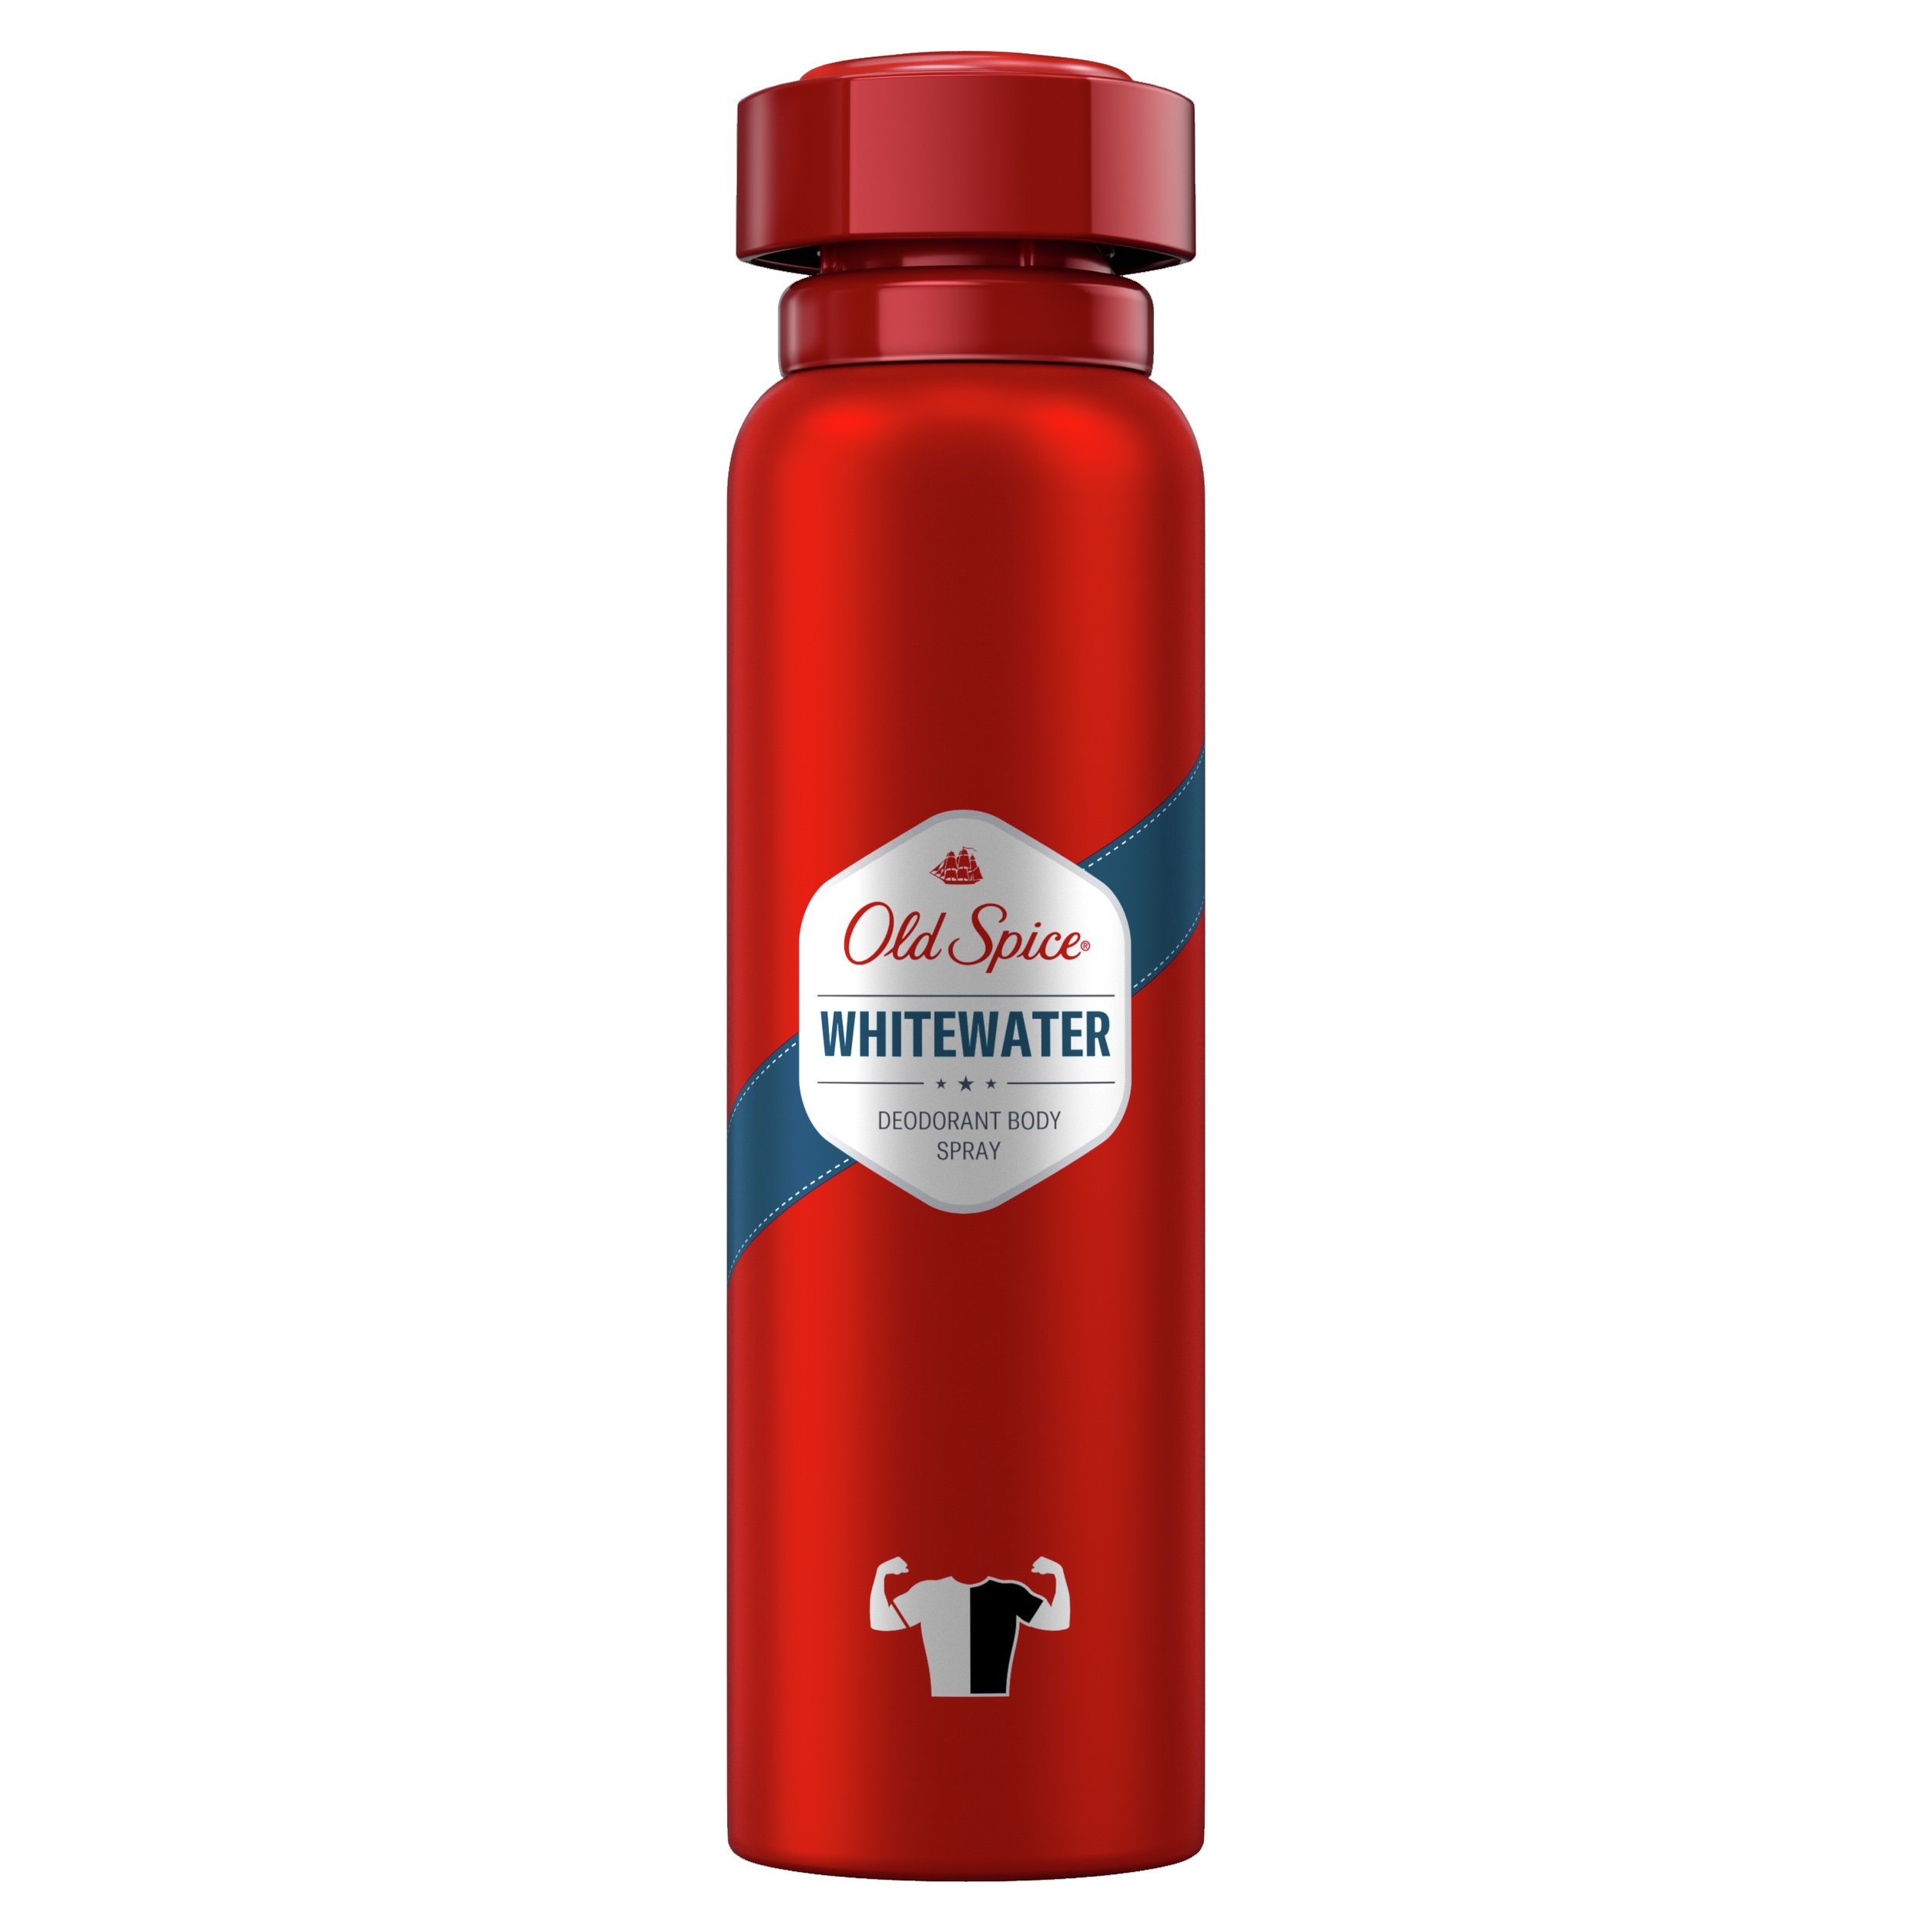 Old Spice Whitewater Deodorant Body Spray Αντι-ιδρωτικό & Αποσμητικό Spray Σώματος για Άντρες 150ml